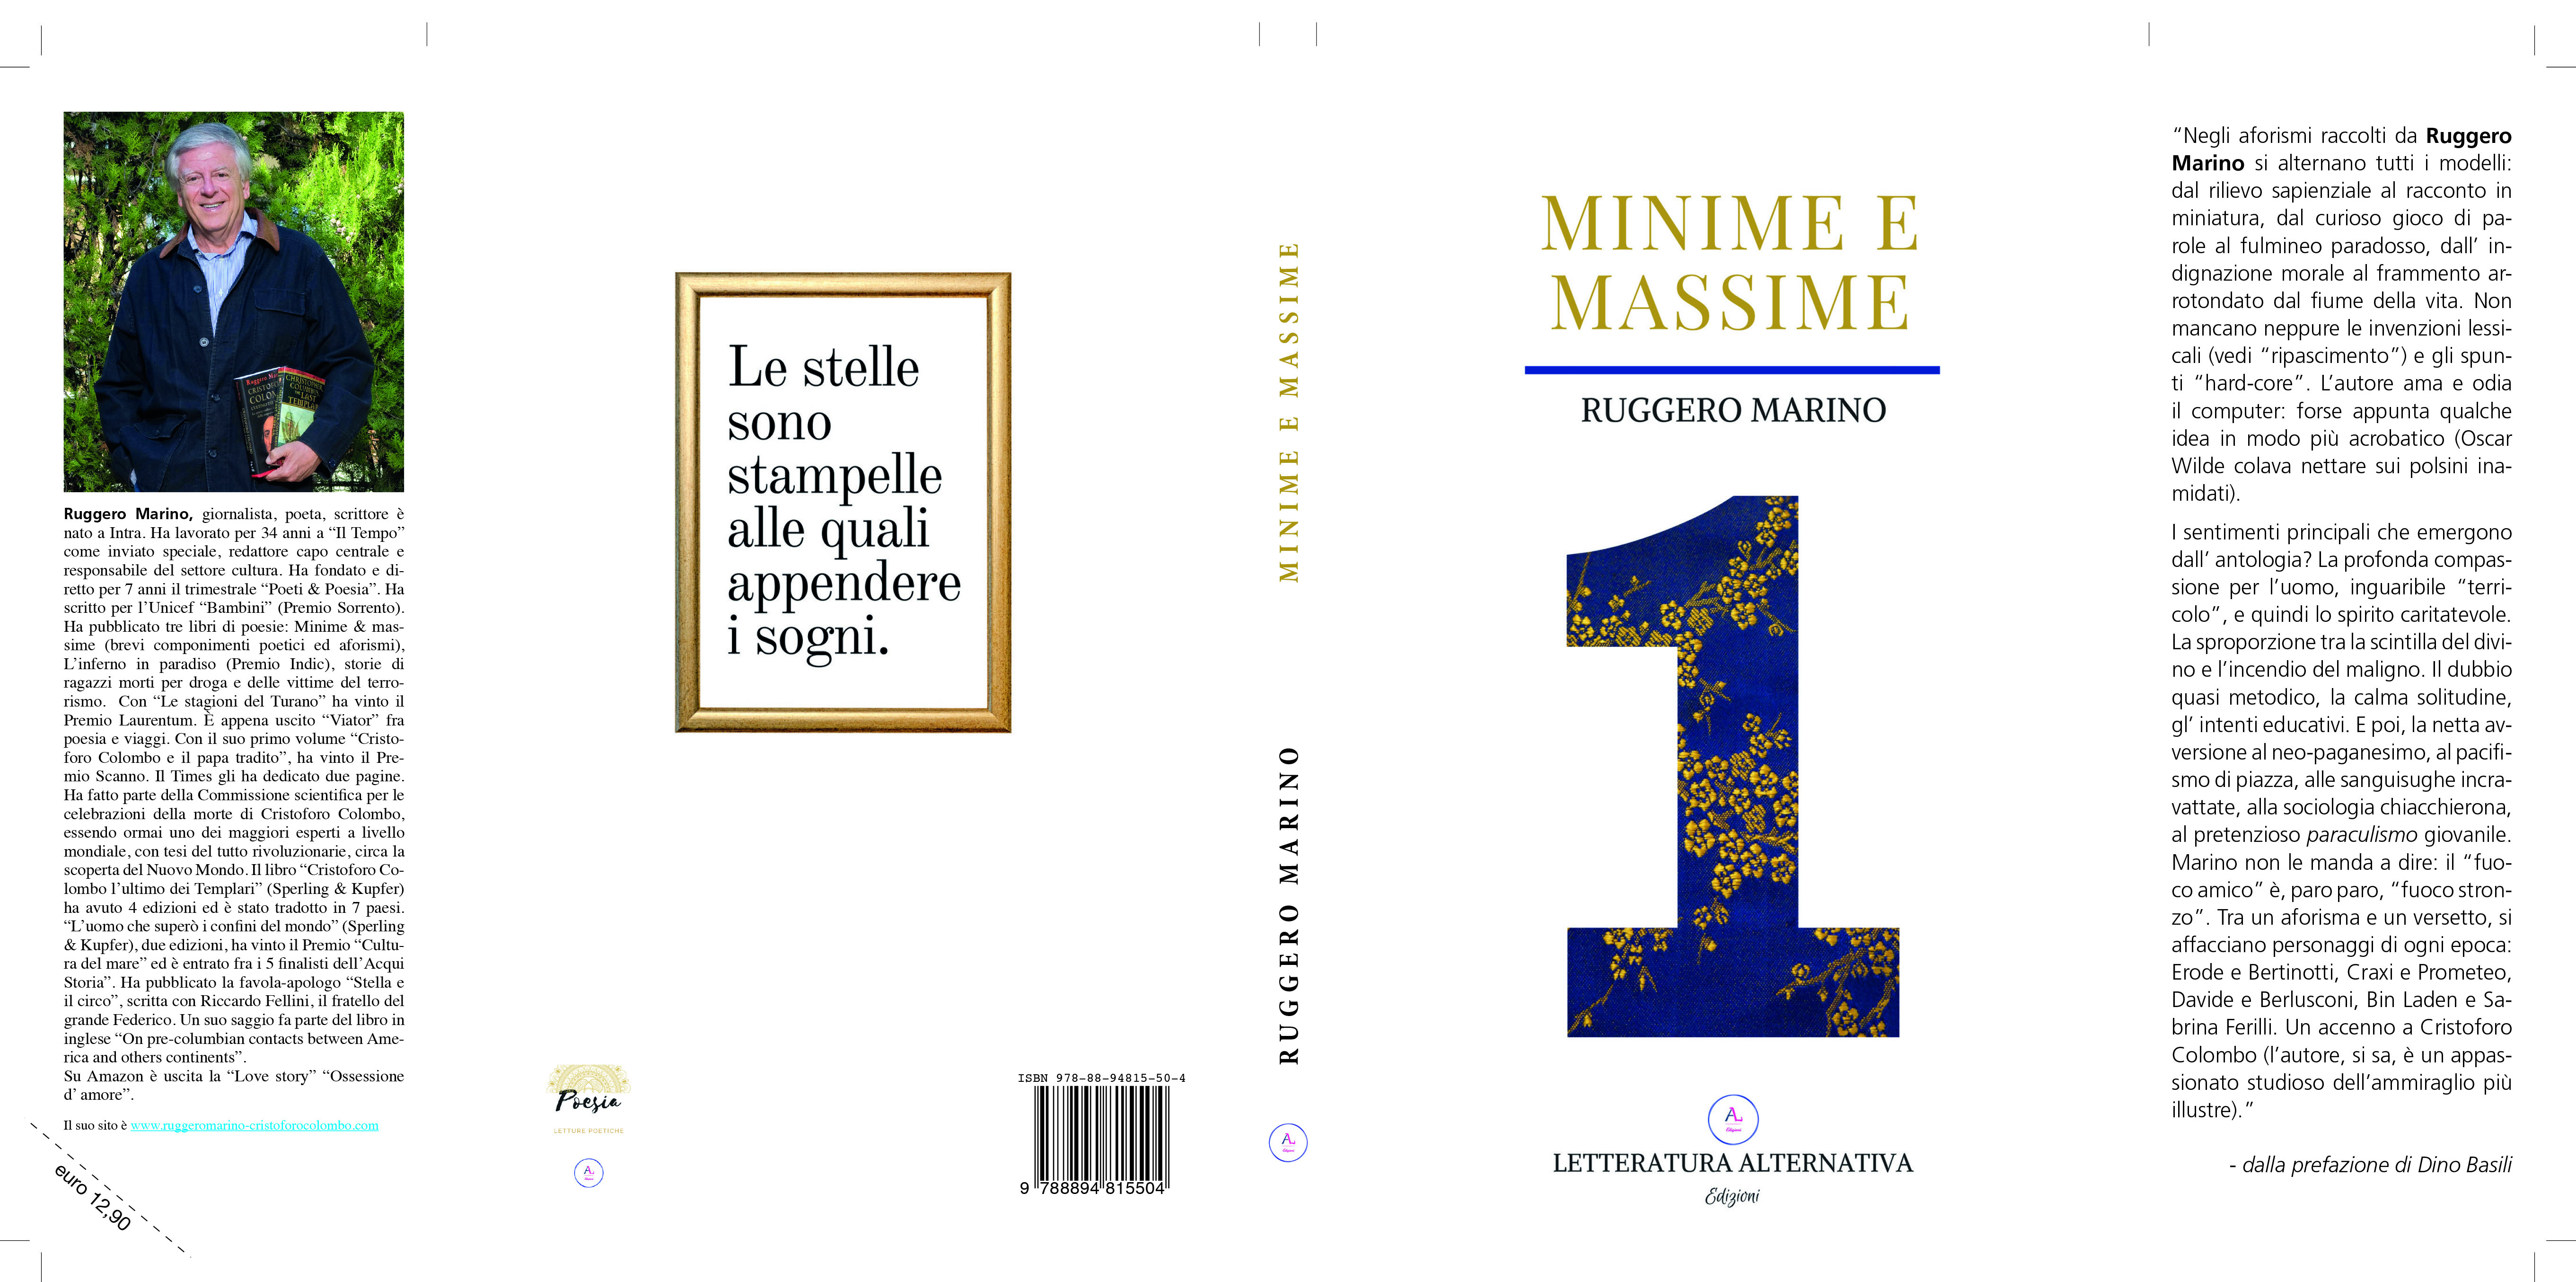 MINIME E MASSIME 1 - UN LIBRO PER TUTTE LE STAGIONI